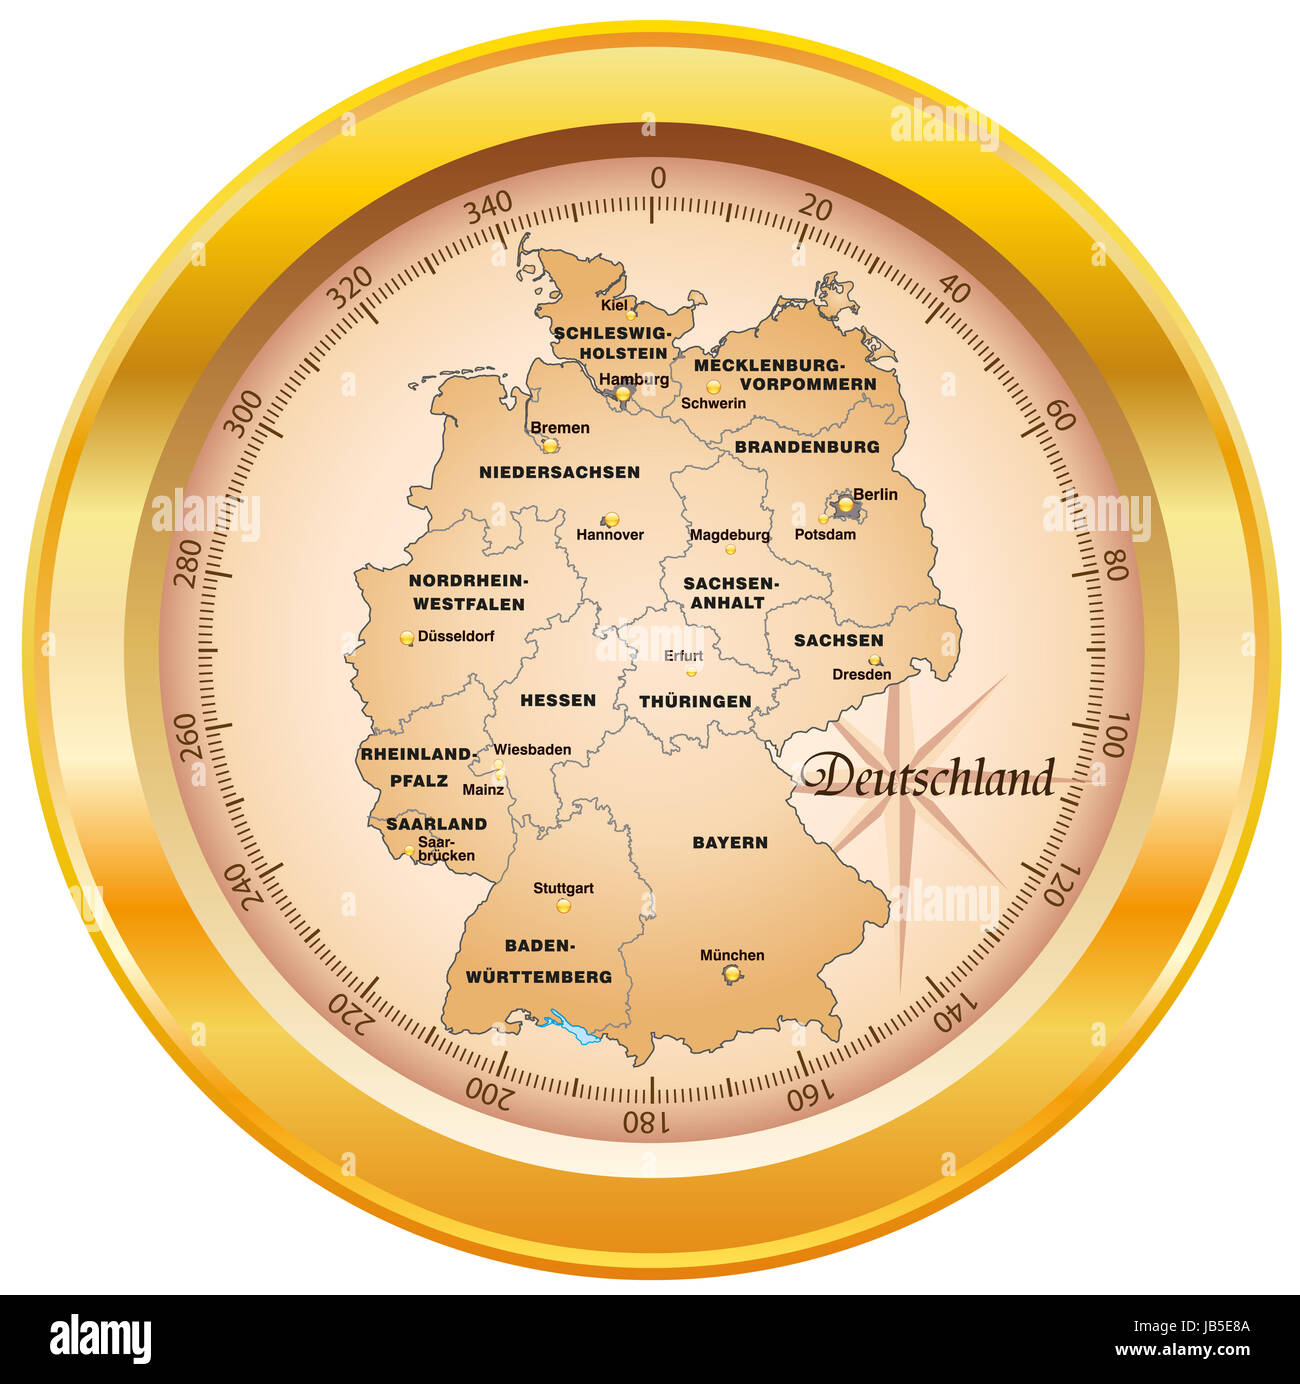 Deutschland bundesländer hauptstadt karte